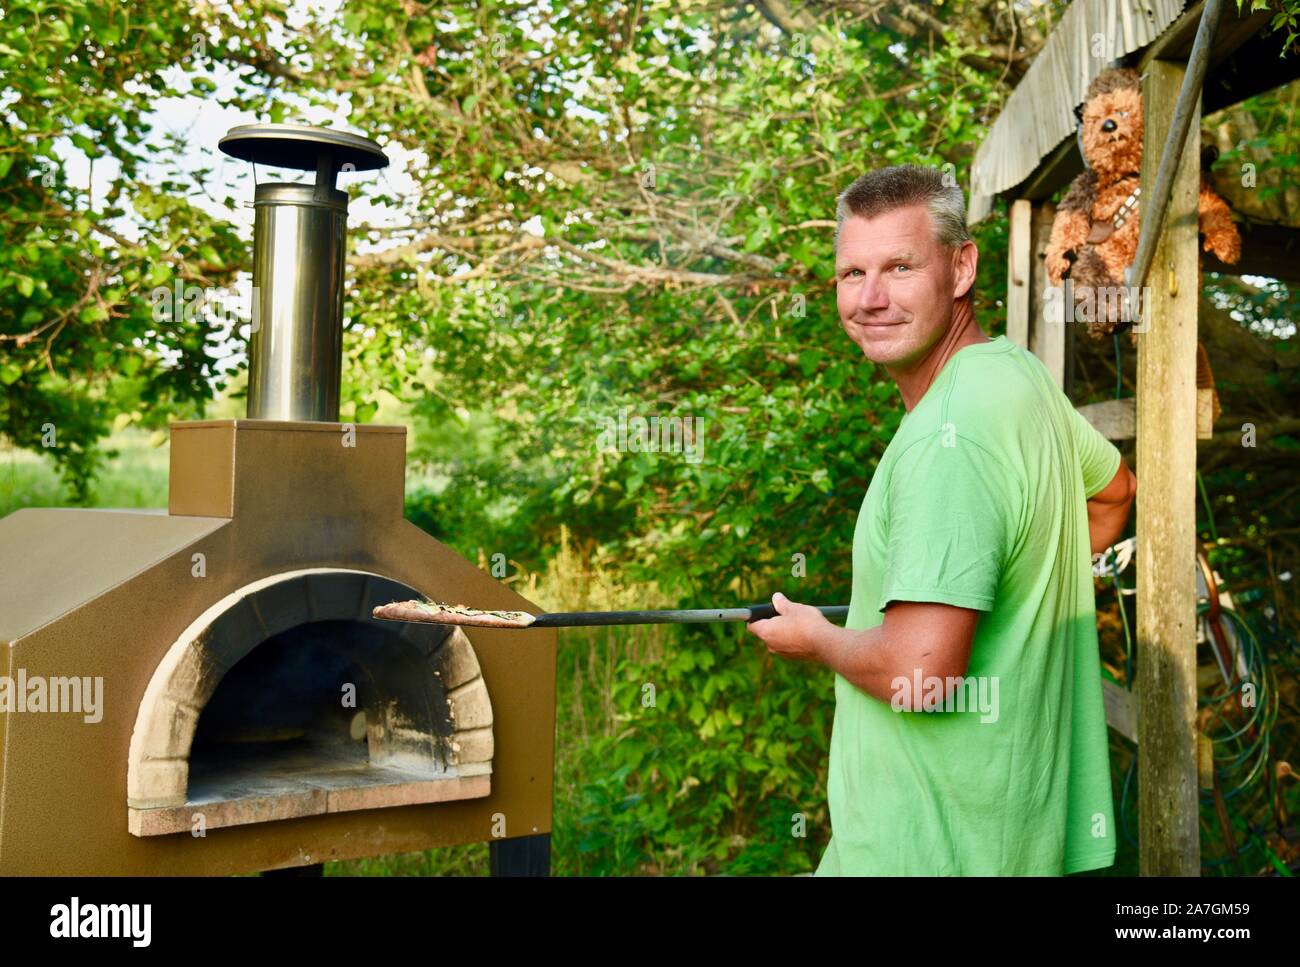 Mann kochen handwerklichen Pizza draußen in einem Holzofen Forno Bravo Backofen, mit Zutaten aus biologischem Anbau am Inn Serendipity, Browntown, Wisconsin, USA Stockfoto